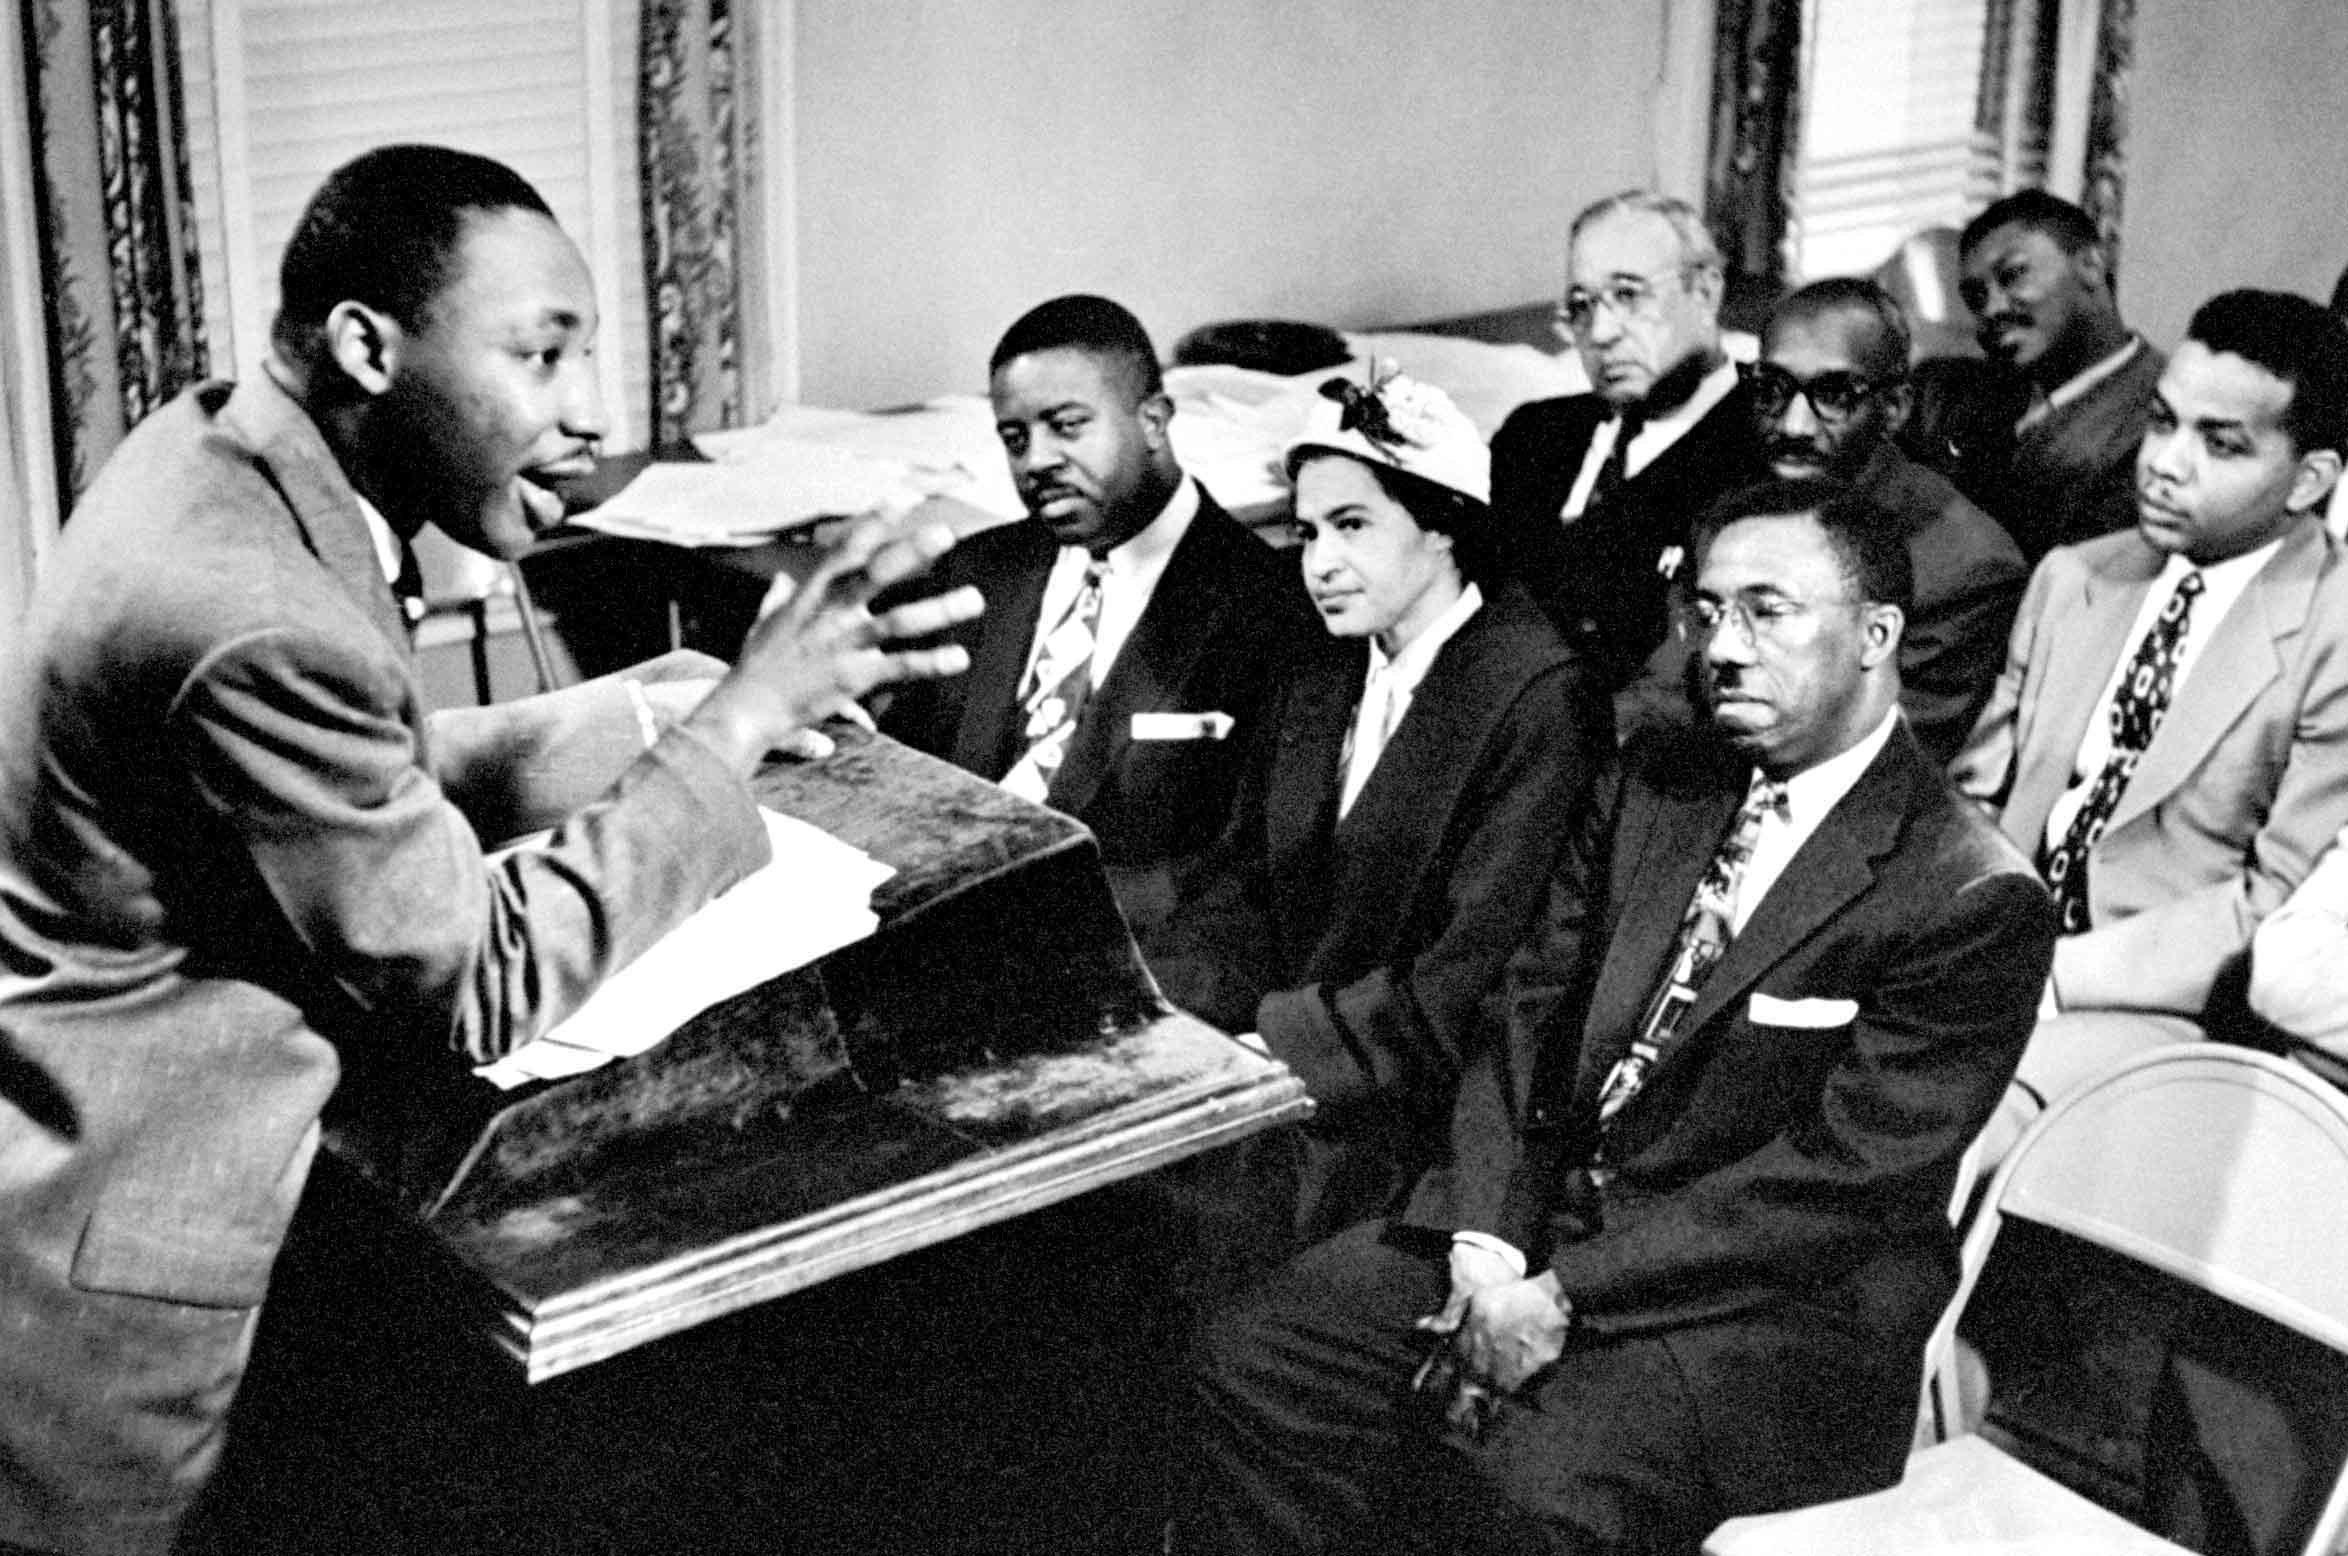 Dr. King teaches a crowd